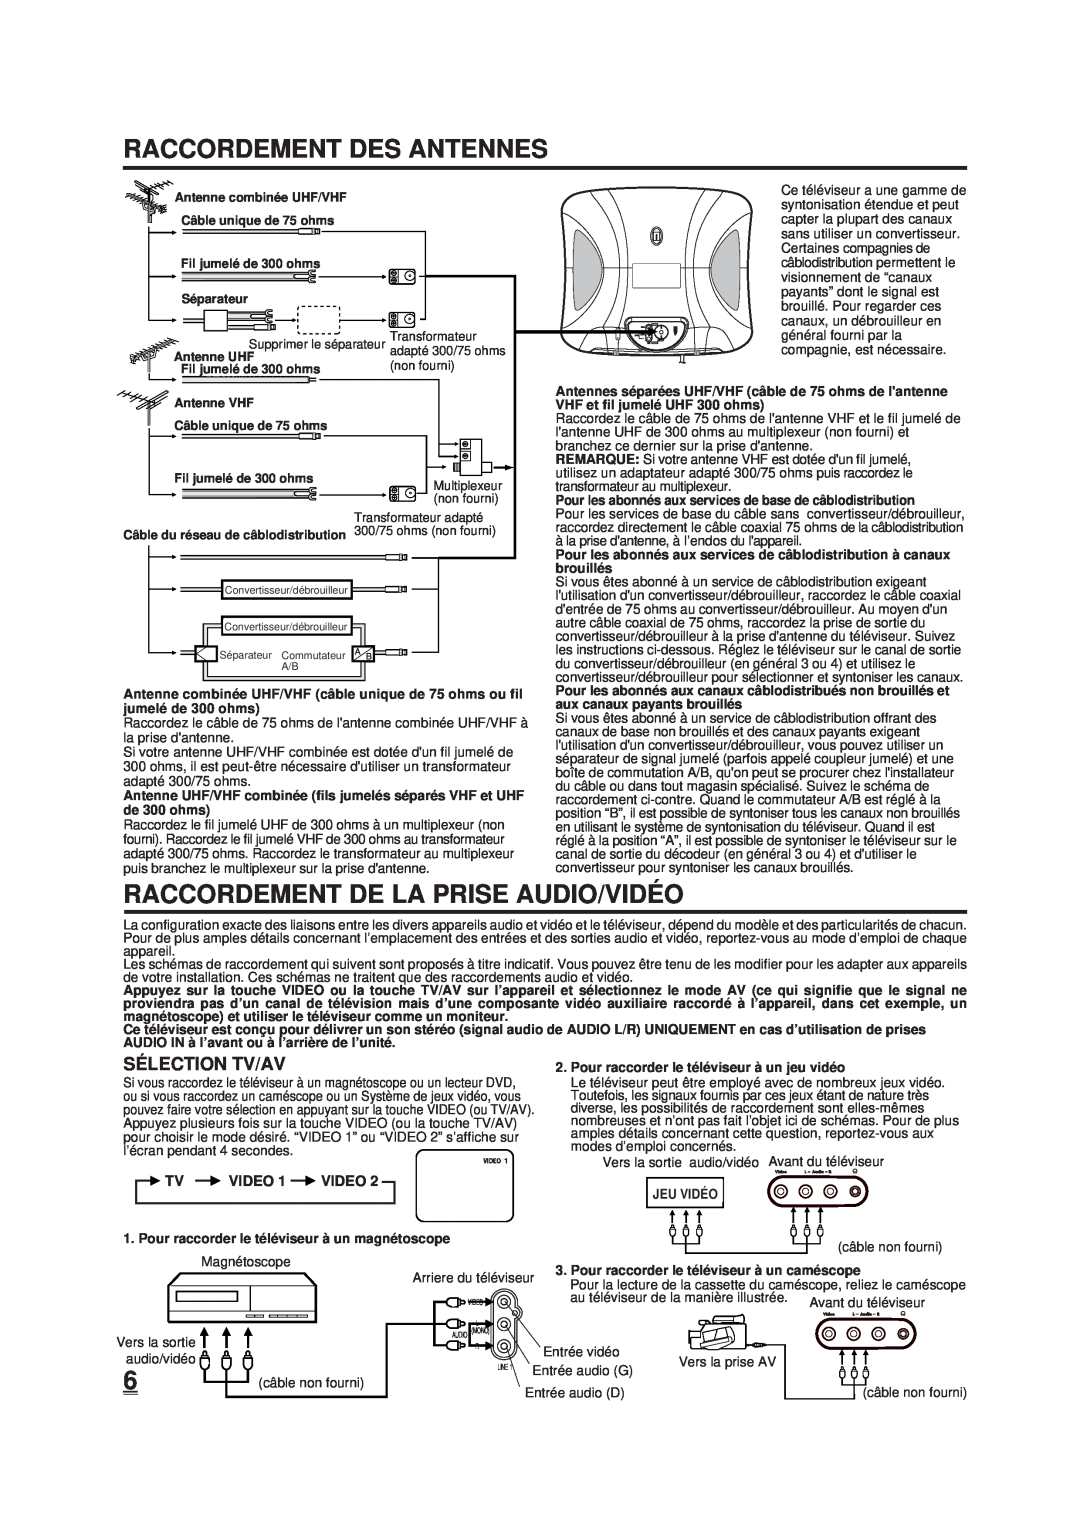 Memorex DT1900-C manual Raccordement Des Antennes, Raccordement De La Prise Audio/Vidé O, Sé Lection Tv/Av 